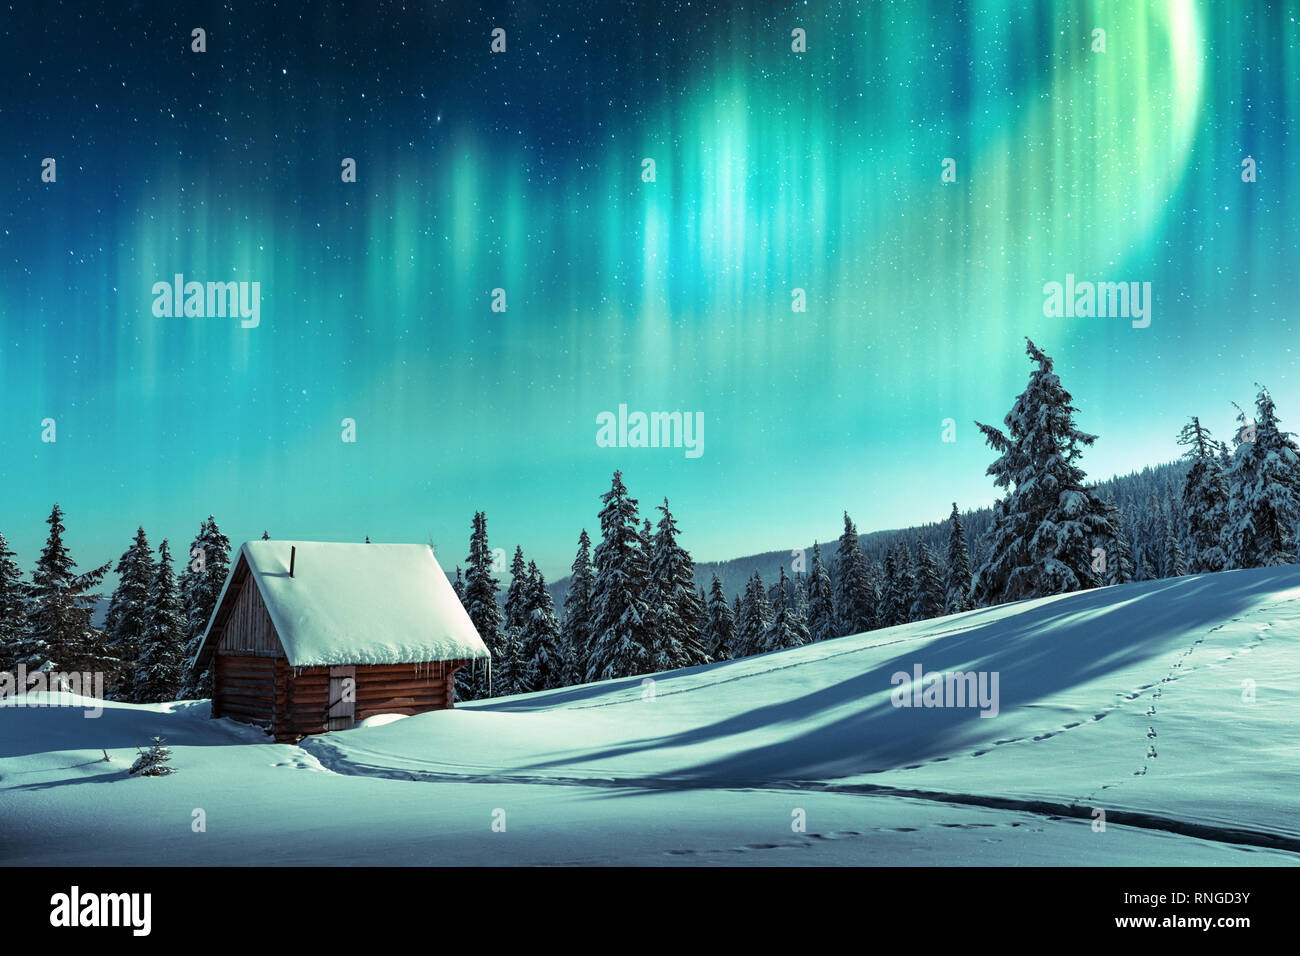 Fantastico paesaggio invernale con casa in legno in montagna innevata e northen luce nel cielo notturno Foto Stock